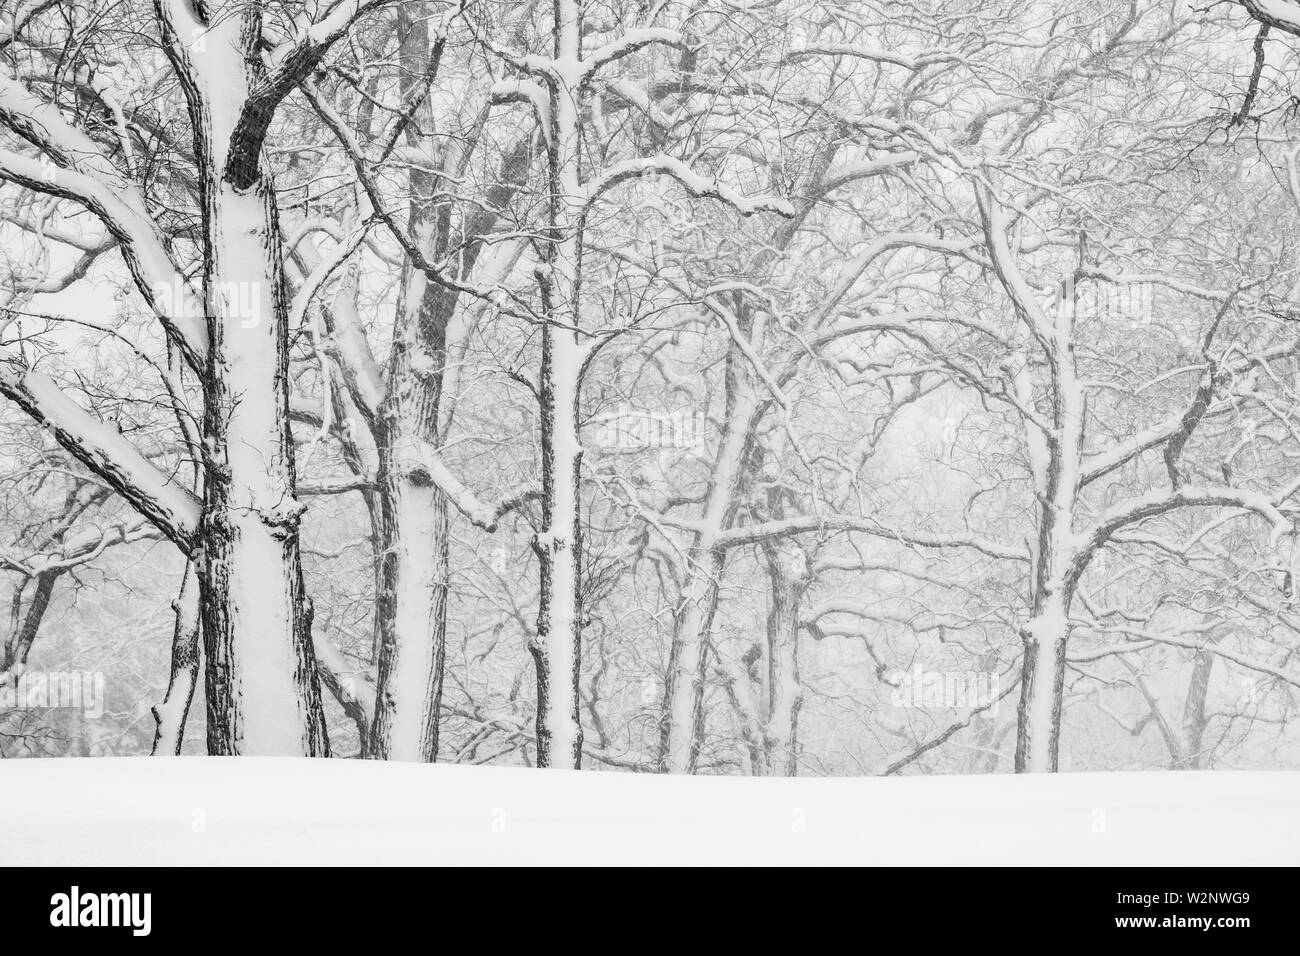 Aprile tempesta di neve, bosco, STATI UNITI D'AMERICA, di Dominique Braud/Dembinsky Foto Assoc Foto Stock